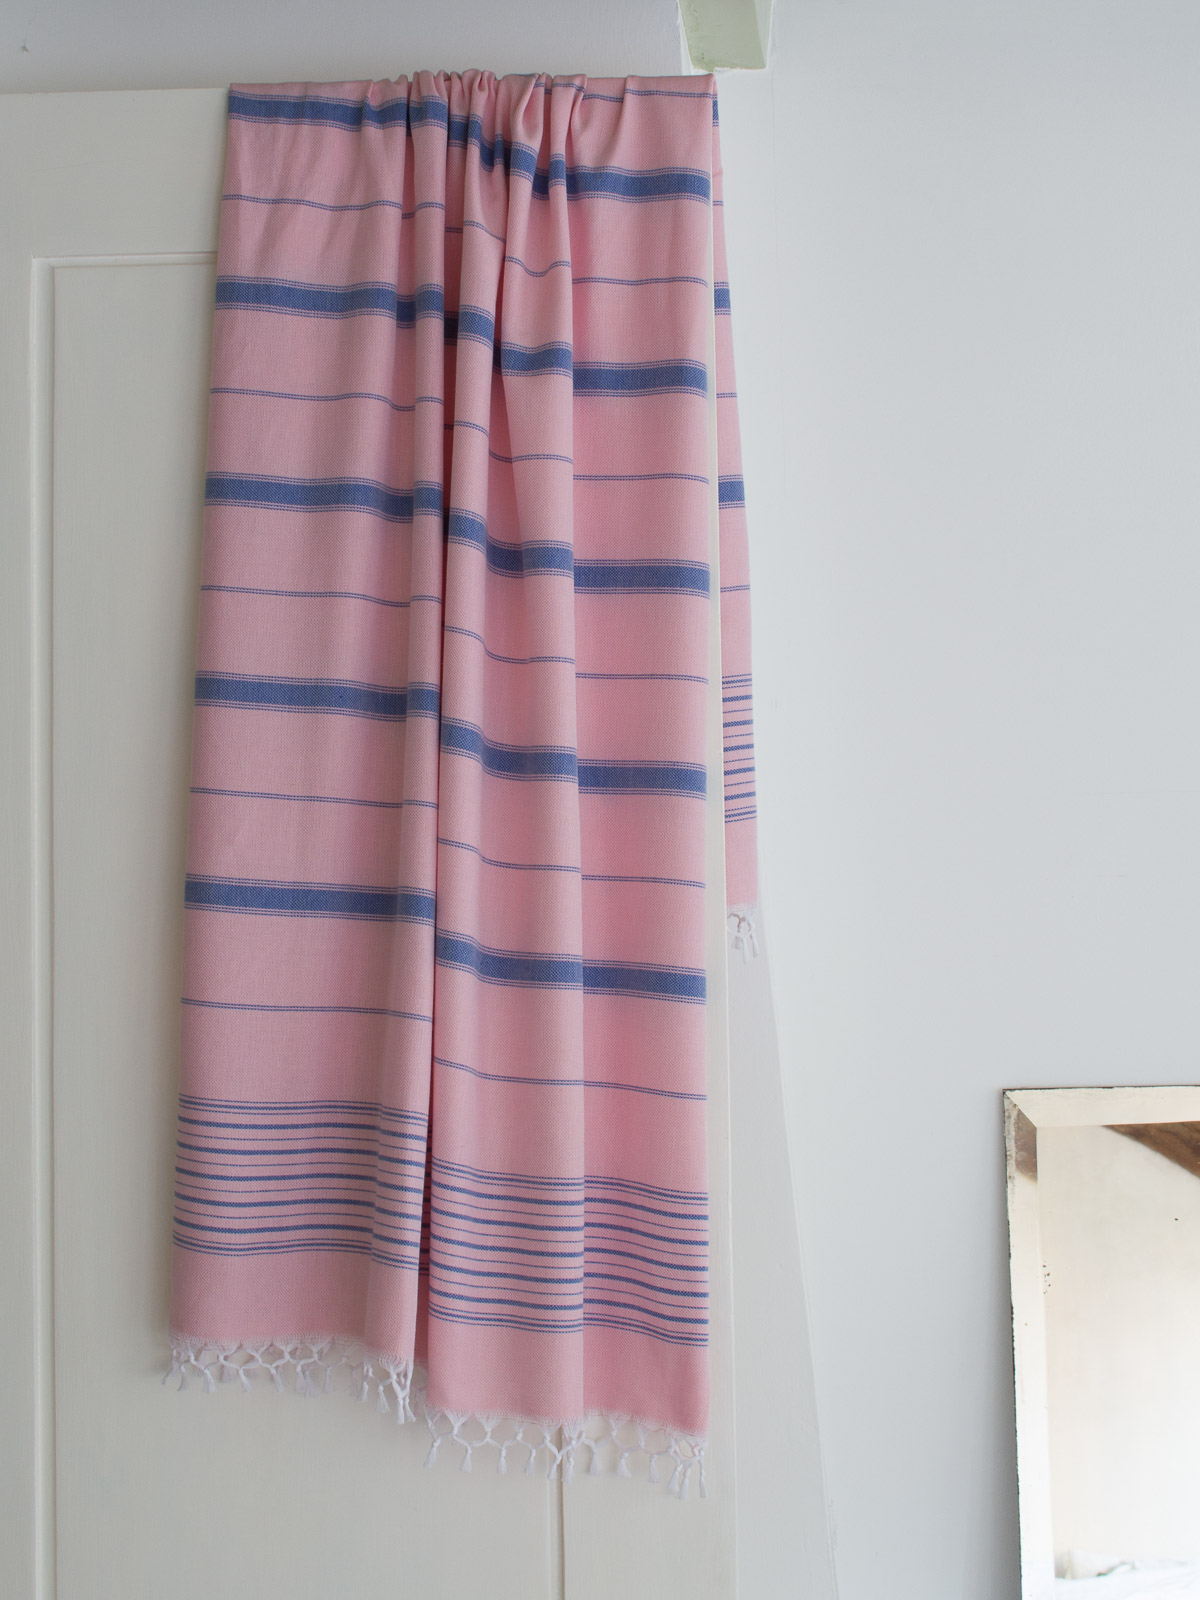 asciugamano hammam rosa cipria/azzurro 170x100cm